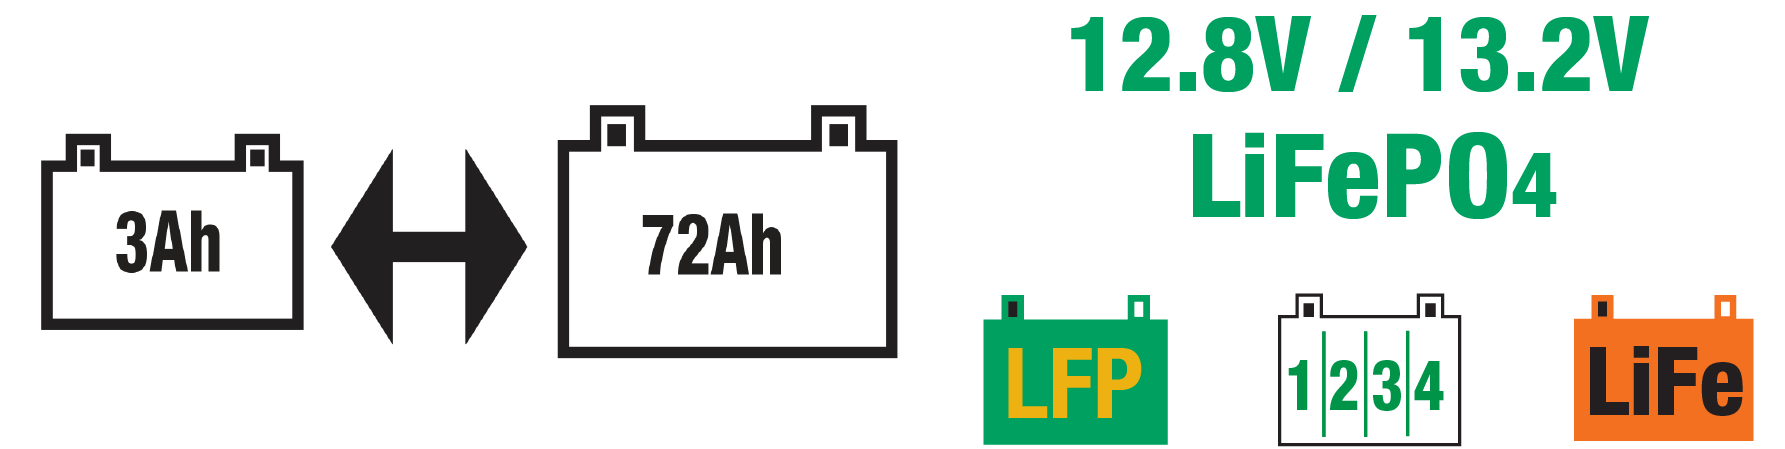 Il optimate lfp 6a è ideale per batterie LiFePO4 / LFP da 12,8V/13,2V.